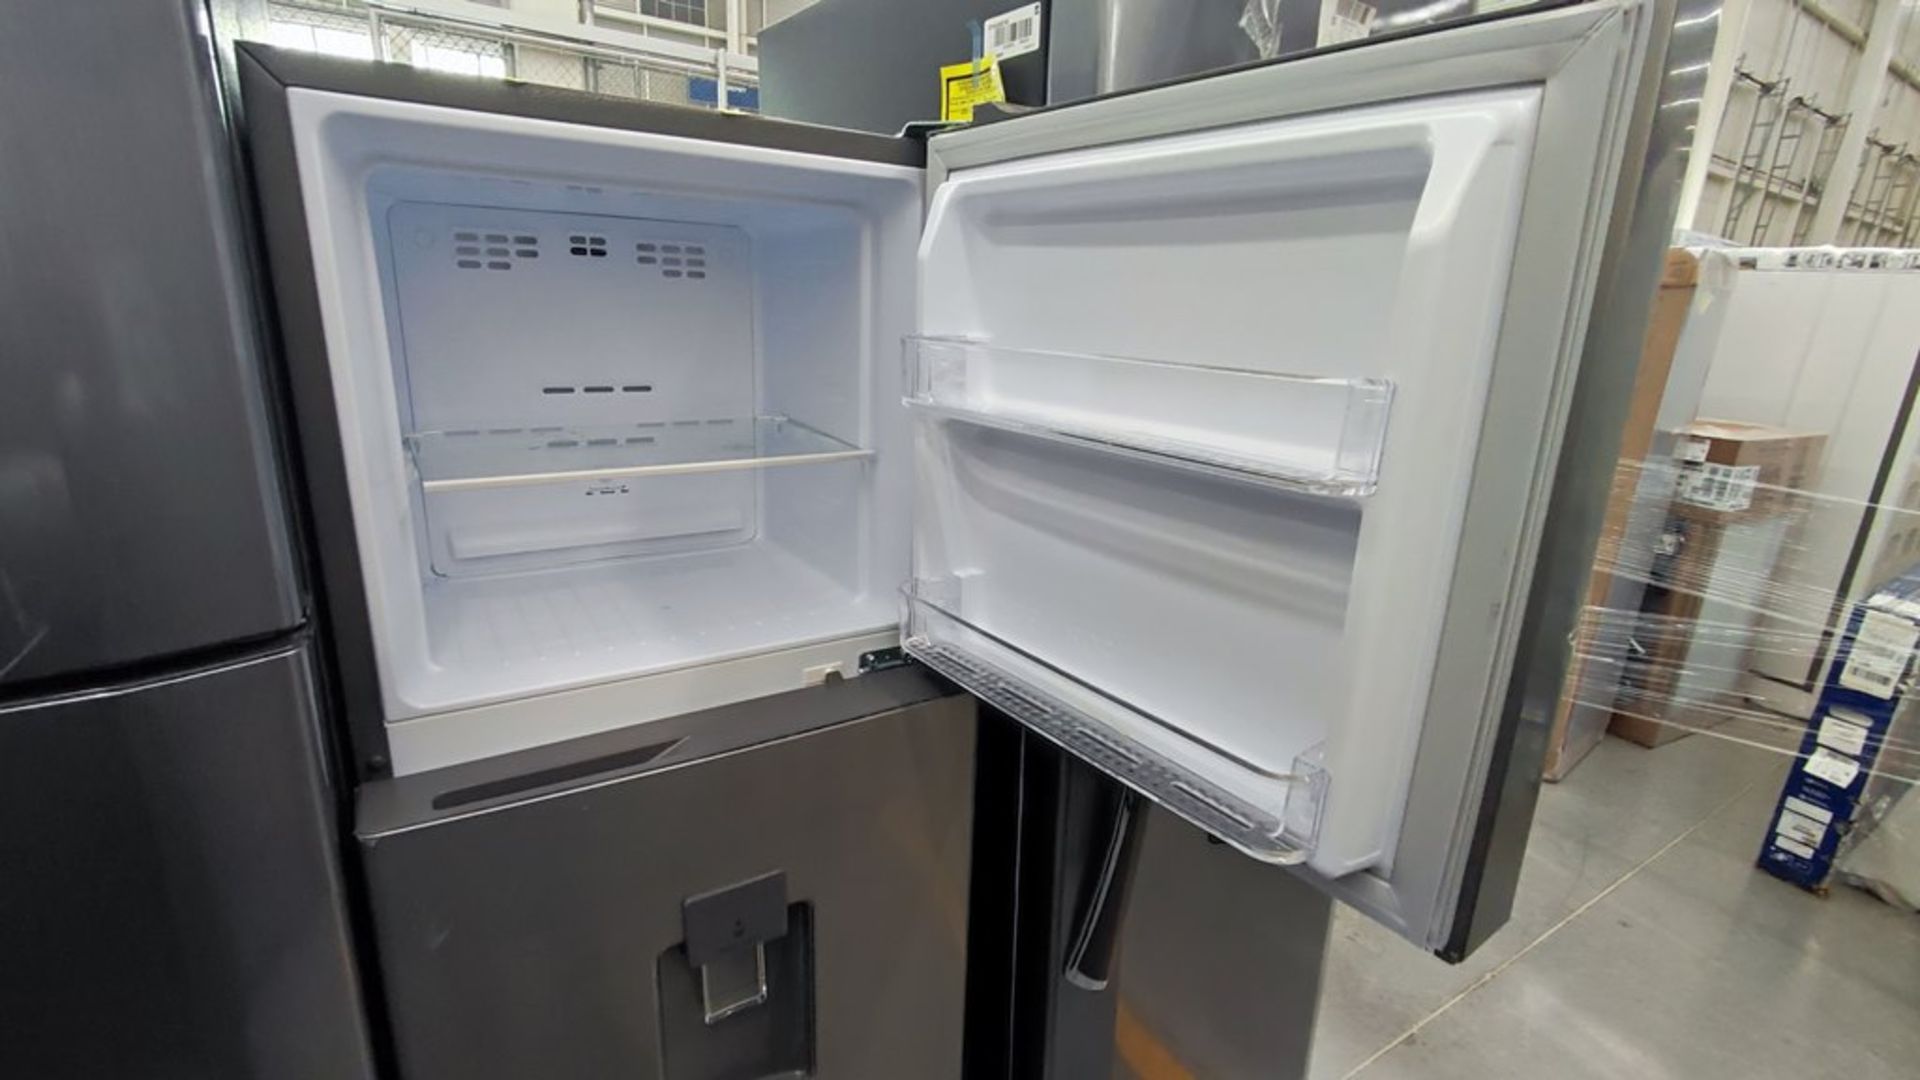 Lote de 2 refrigeradores contiene: 1 Refrigerador Marca Mabe, Modelo RMT400RY, No de serie 2202B401 - Image 12 of 15